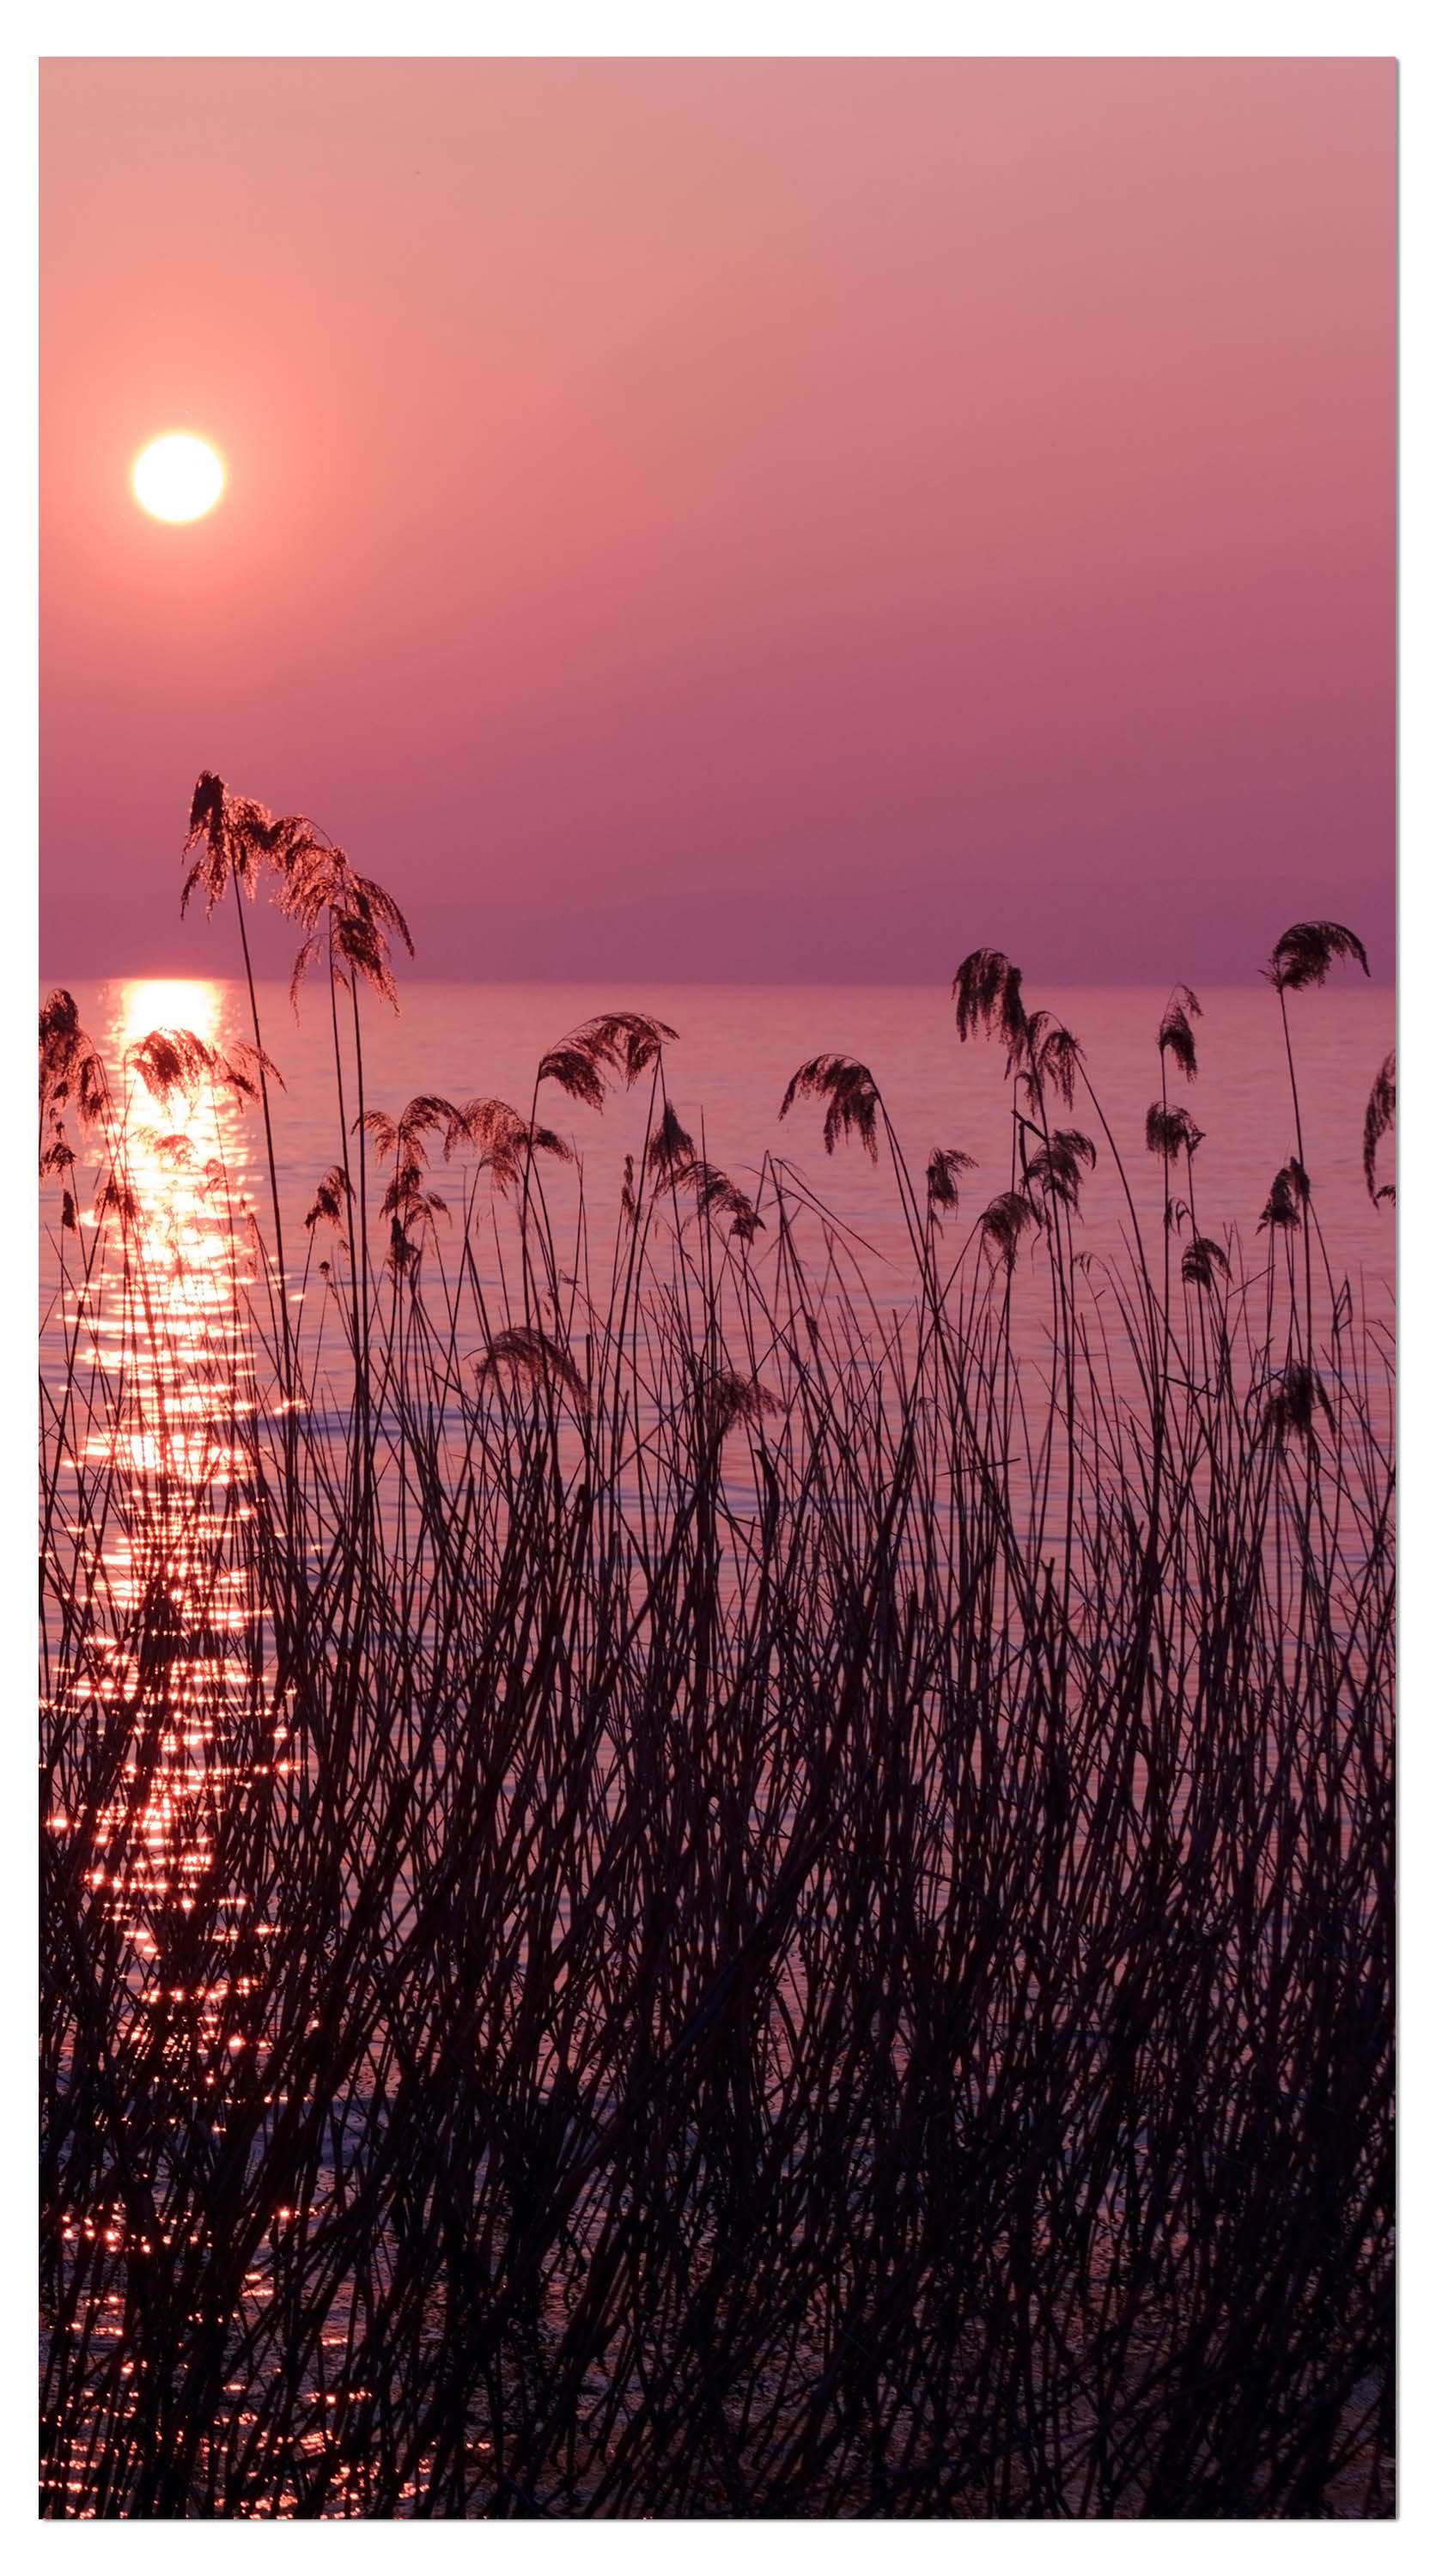 Garderobe See im Abendrot Natur M0172 entdecken - Bild 4